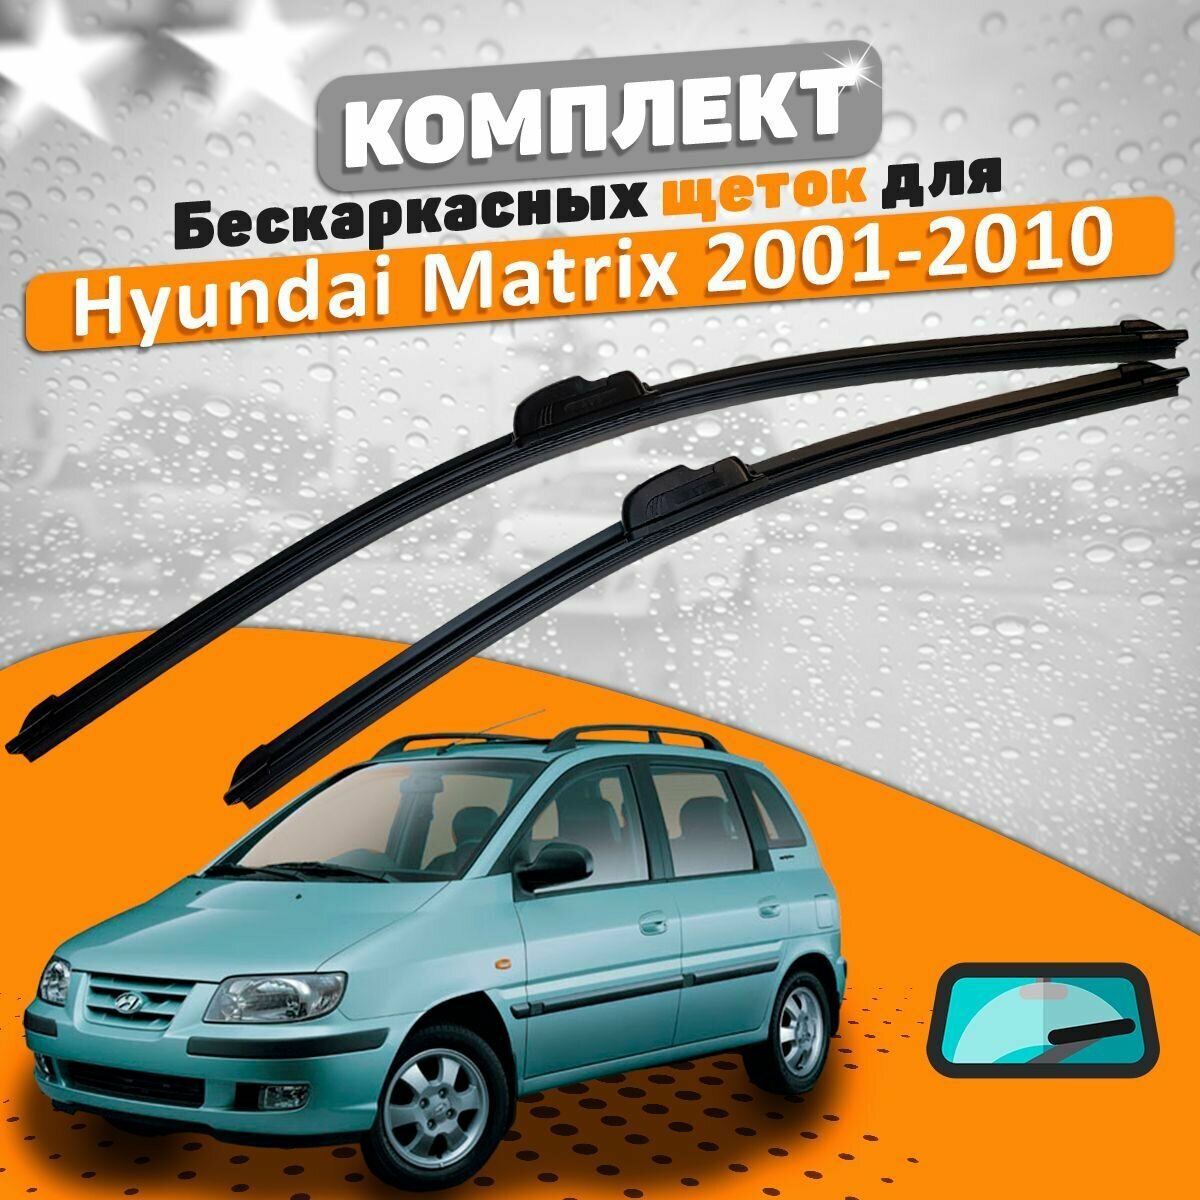 Щетки комплект Hyundai Matrix 2001-2010 (550 и 400 мм) / Дворники Хундай Матрикс